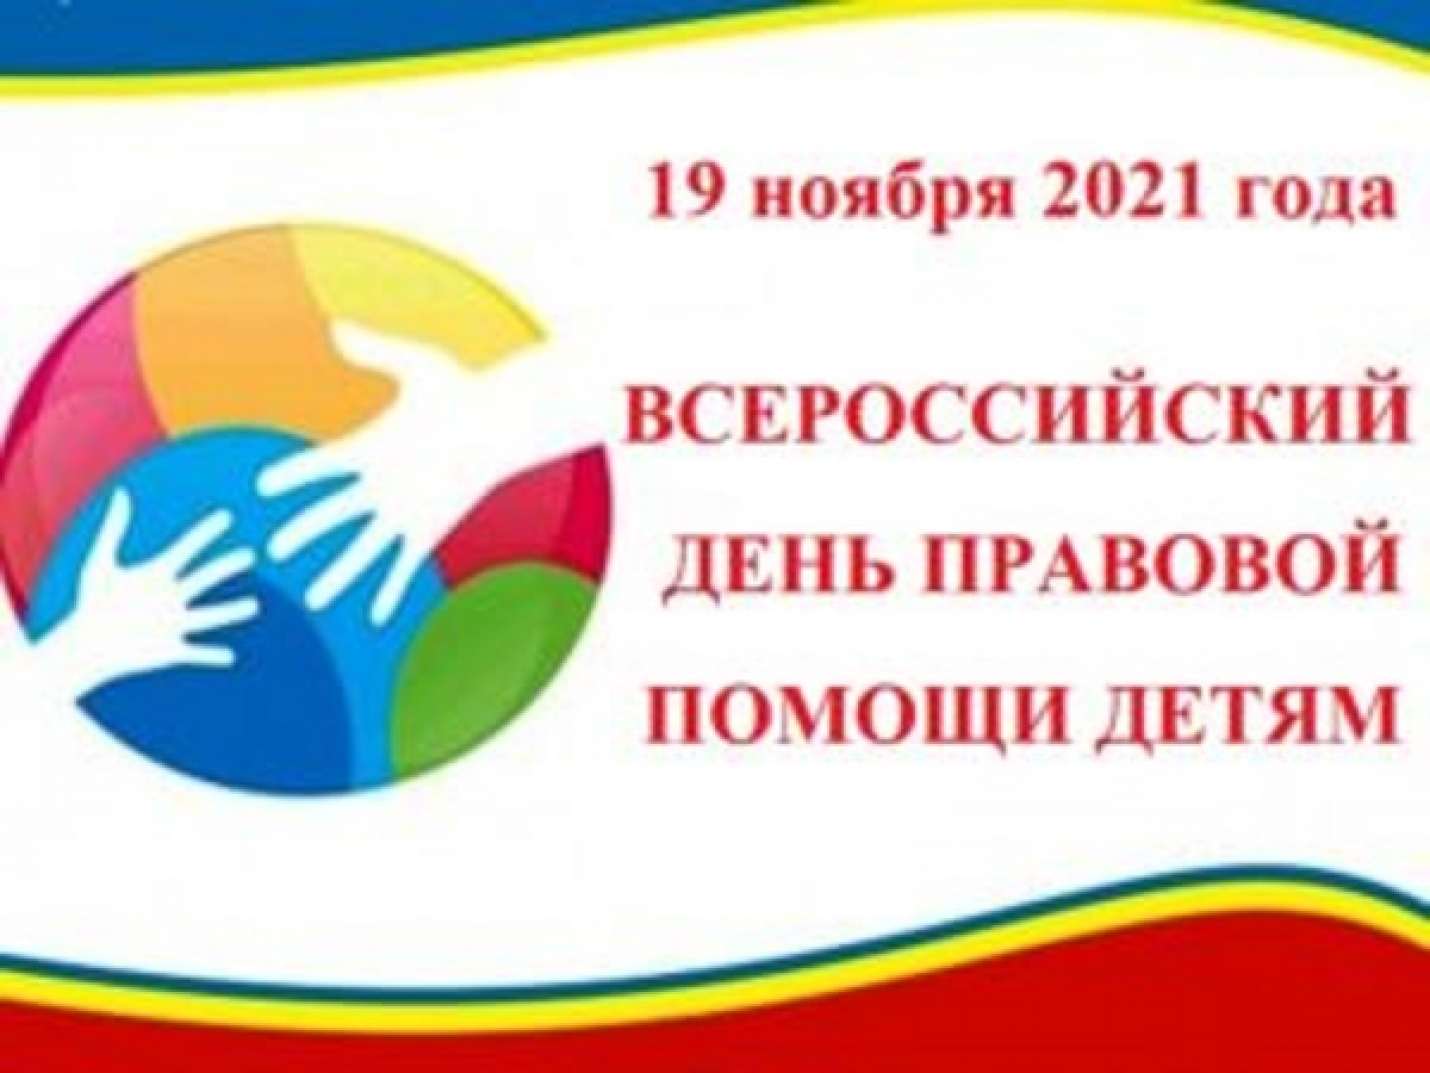 Всероссийский День правовой помощи детям пройдет 19 ноября 2021 года